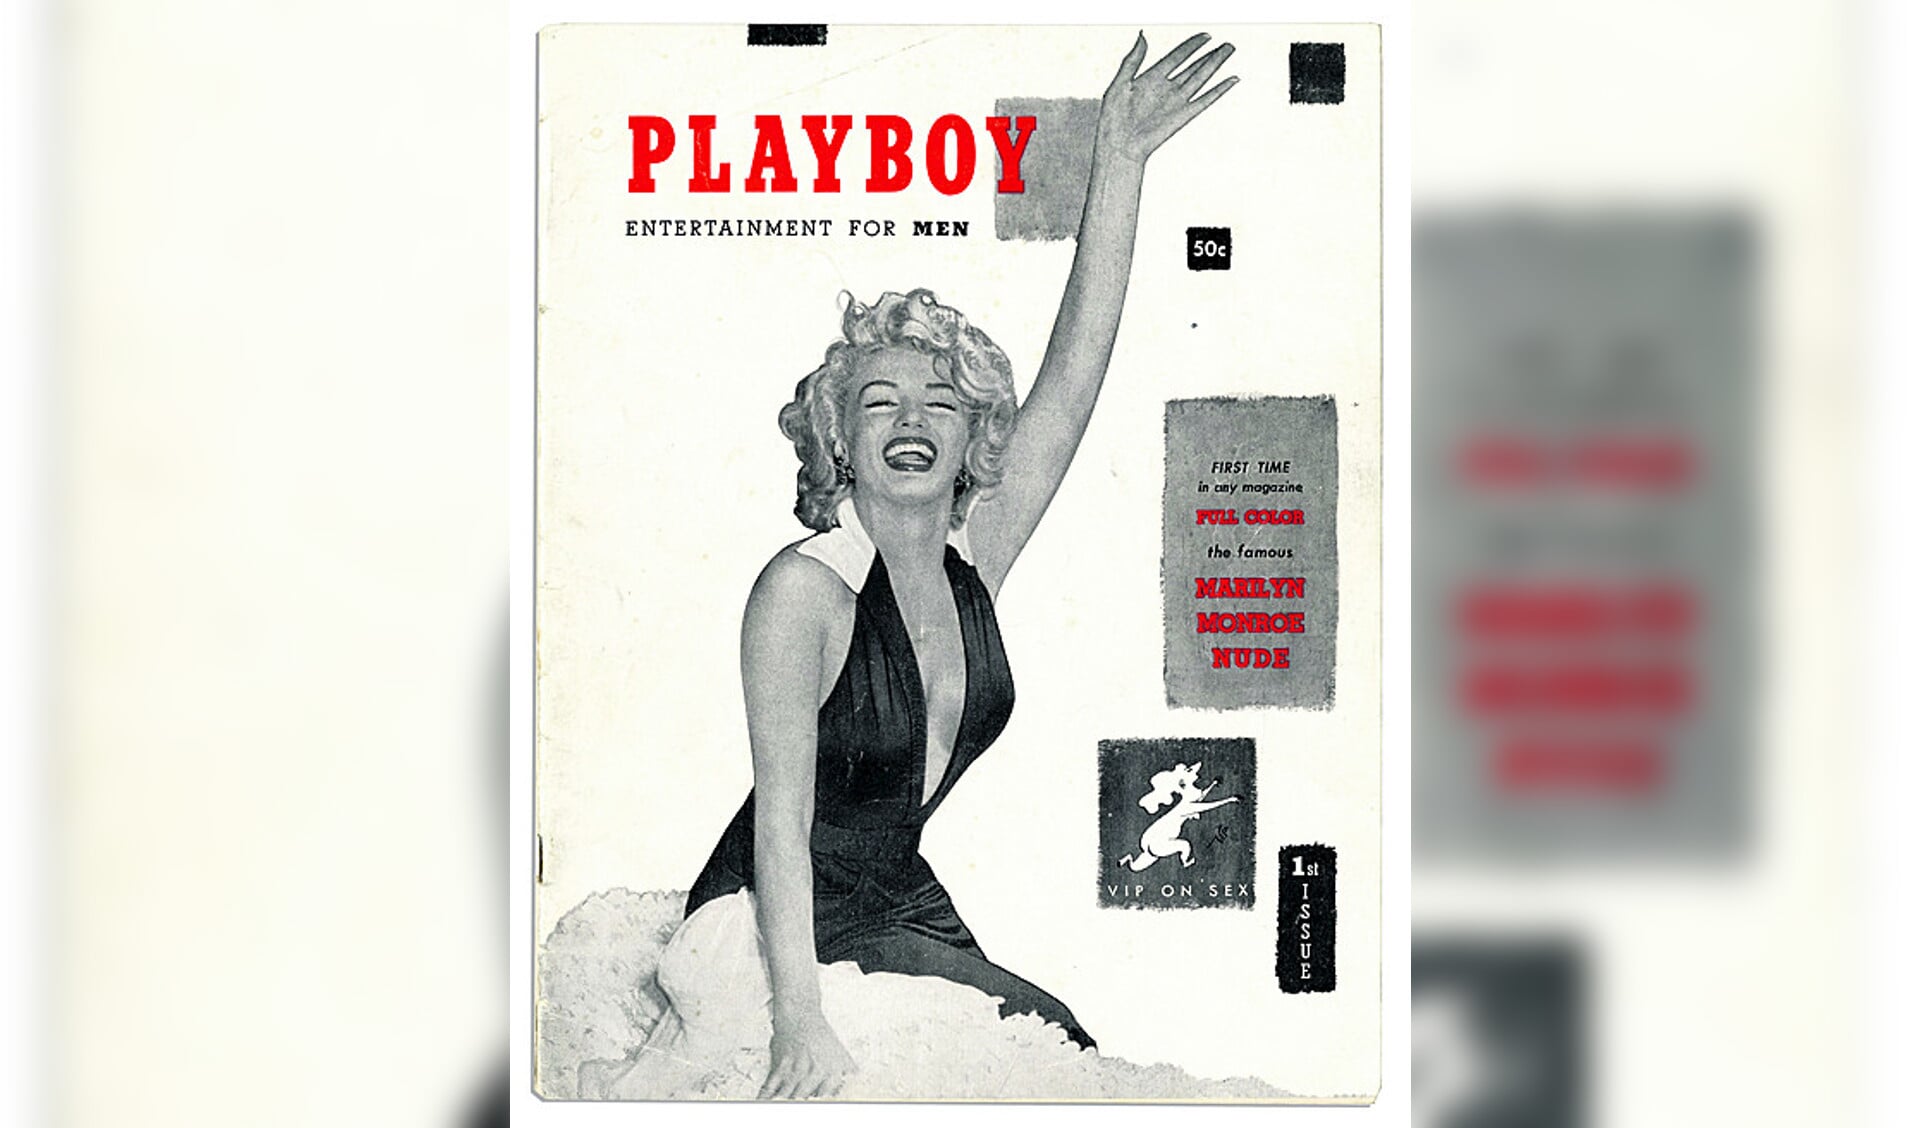 Amerikaanse Playboy stopt met naaktfotos, maar Nederlands blad gaat door